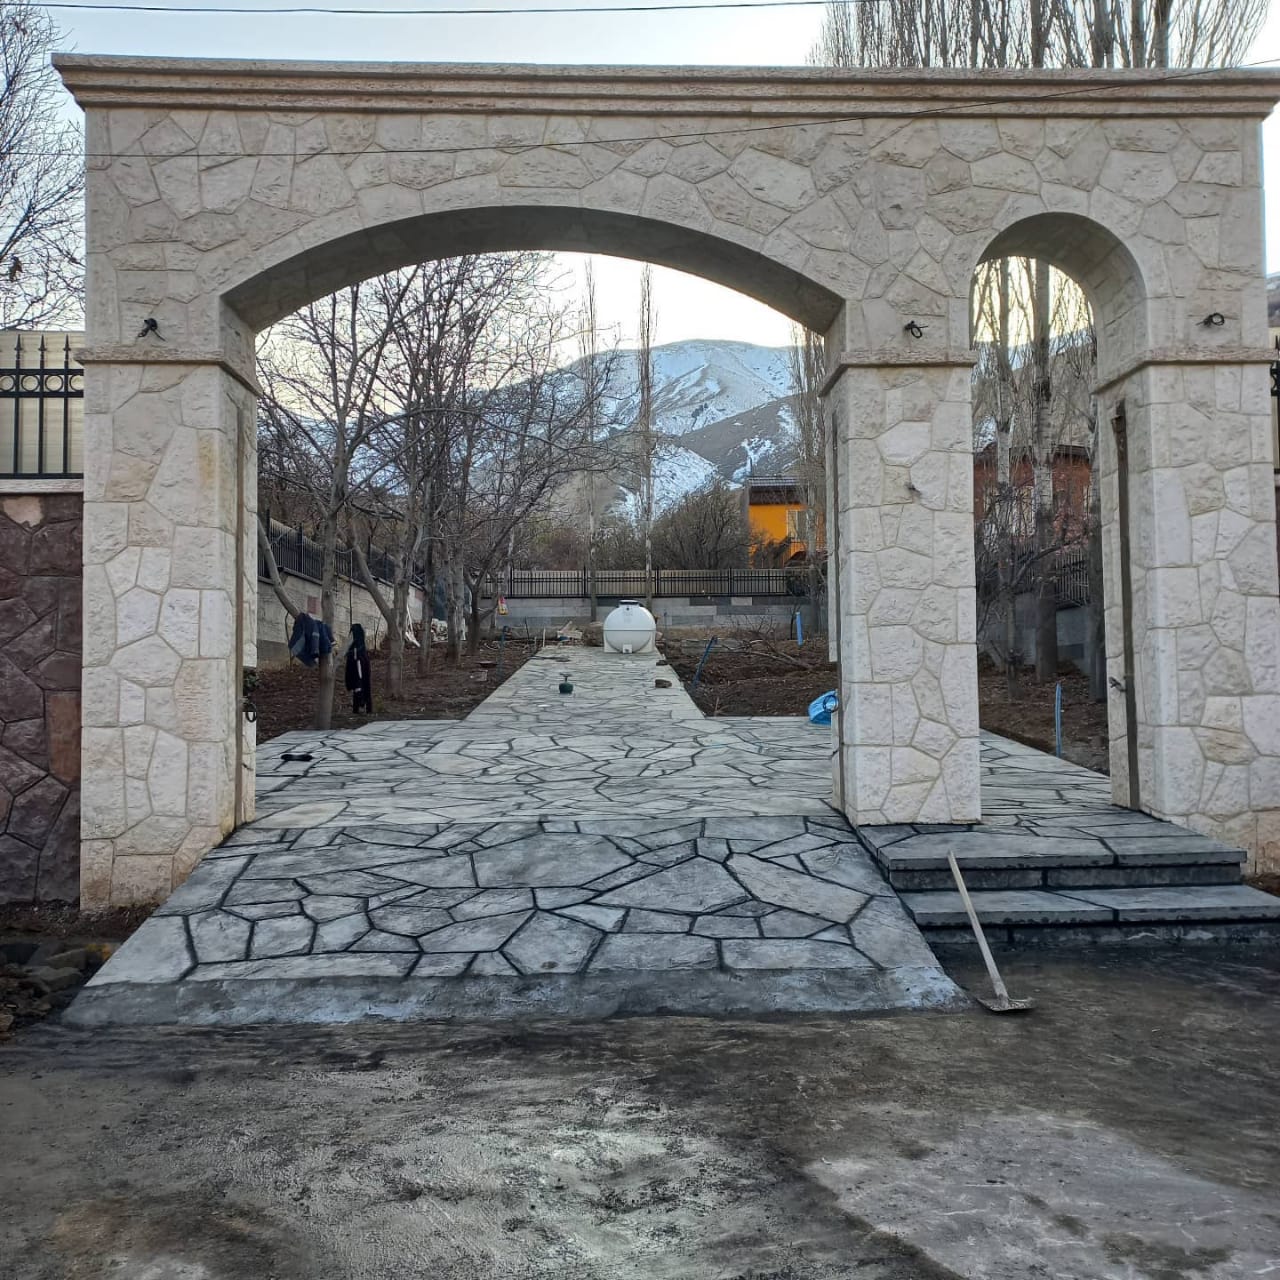 اجرای سنگ لاشه و سنگ مالون برای درب ورودی محوطه باغ ویا ویلا با استفاده از سنگ مالون سفید رنگ اجرا شده است تواسط گروه سنگ لاشه کار پیمانکاری سنگ لاشه اجرا شده است 